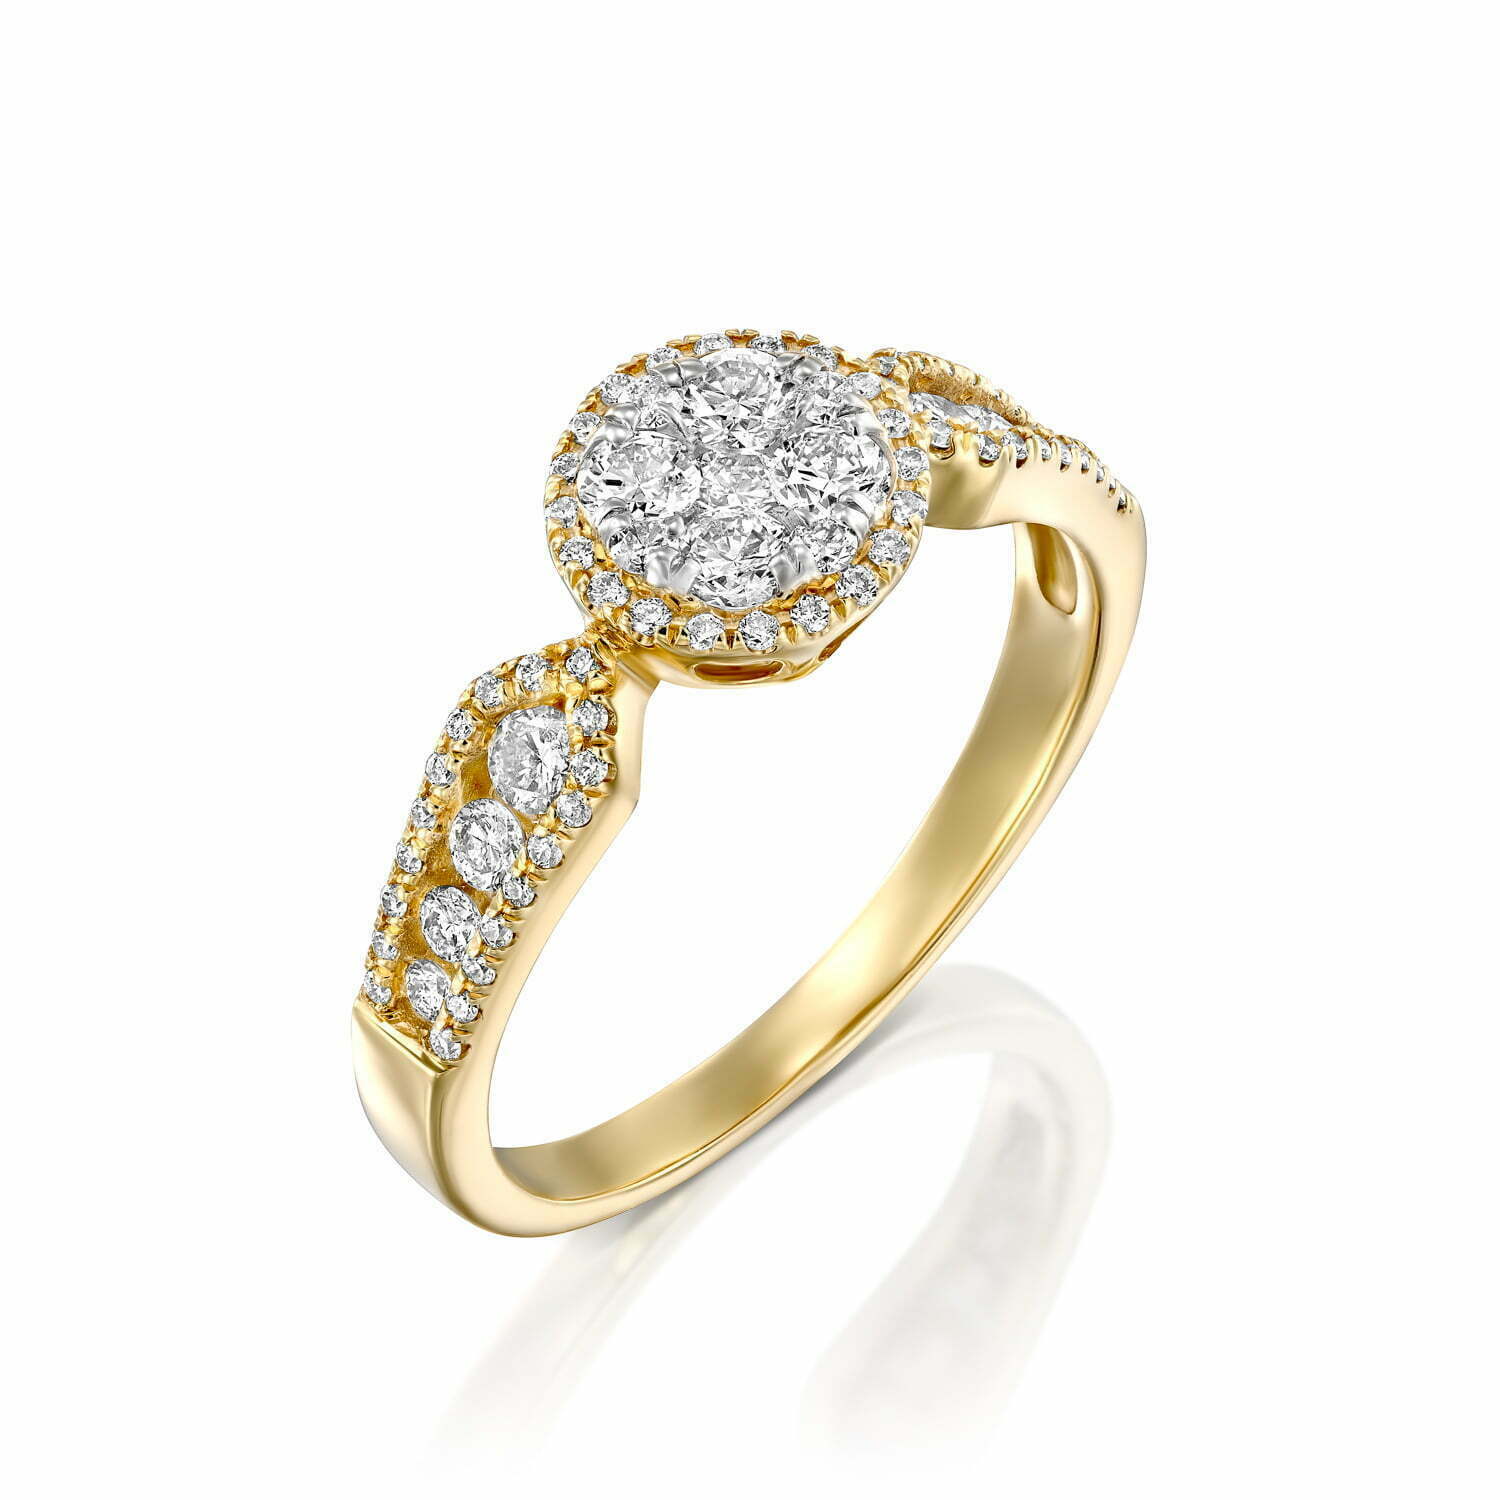 טבעת יהלומים בעיצוב קלאסי, זהב 14K, משובצת 0.58 קראט יהלומים